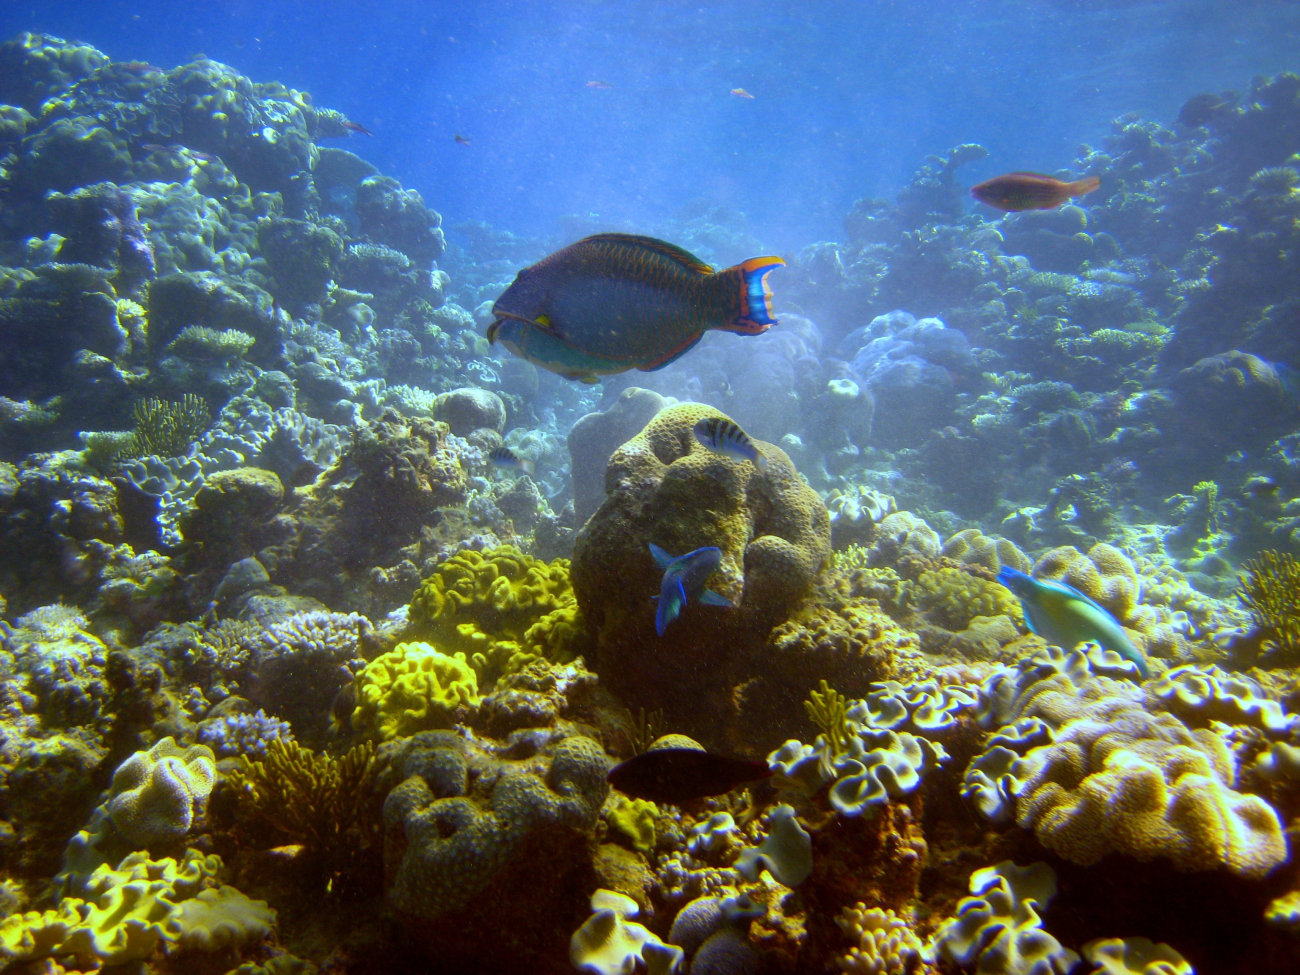 Possibly bicolor parrotfish in center (Cetoscraus bicolor)